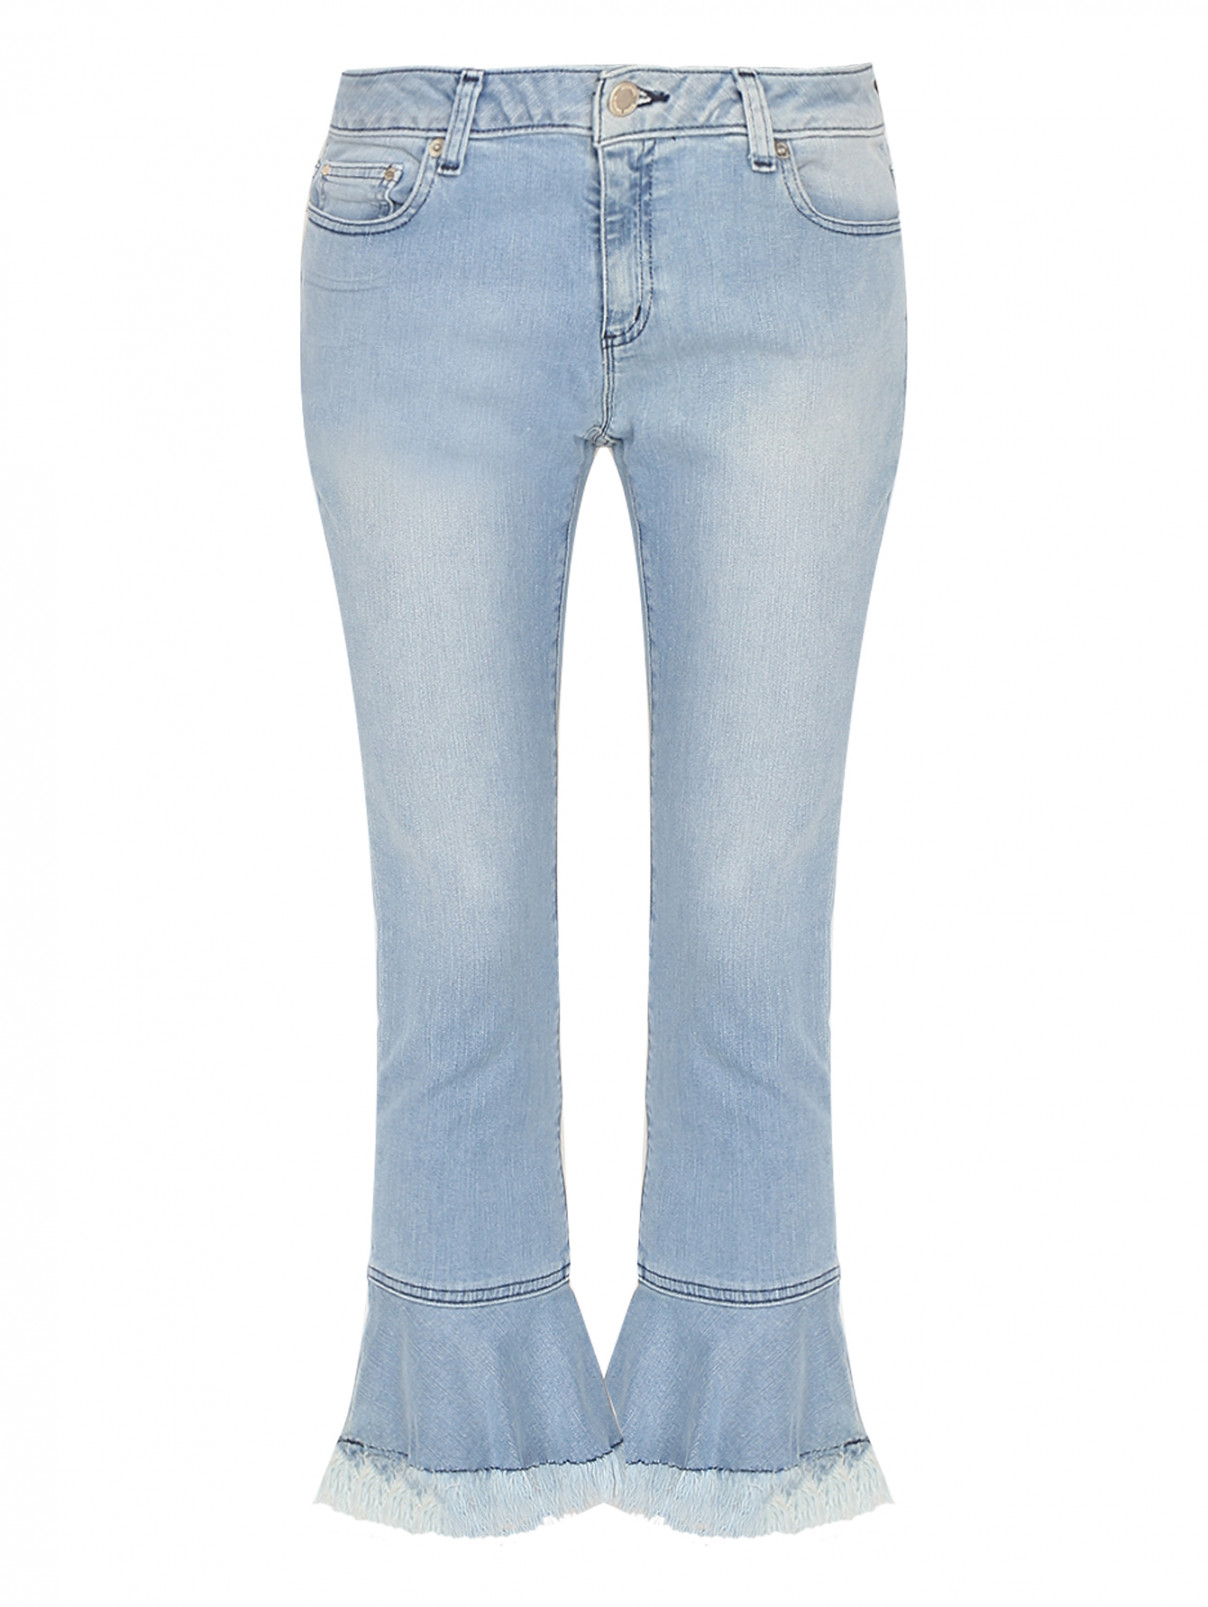 Укороченные джинсы с бахромой Michael by MK  –  Общий вид  – Цвет:  Синий